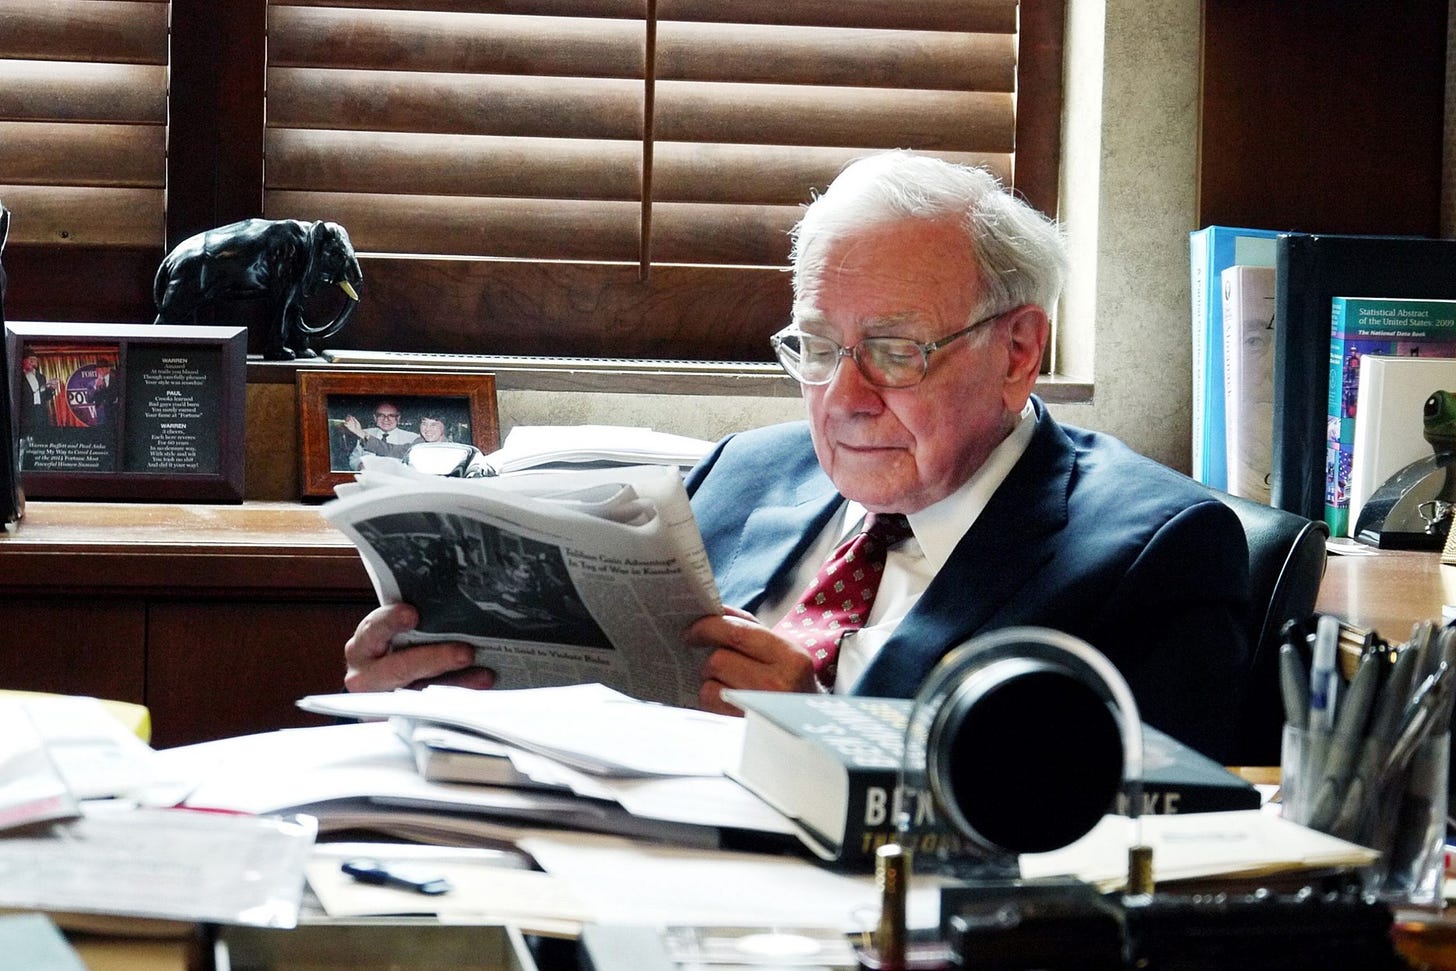 20 Inspirational Books Warren Buffett Recommends Reading - Brooksy